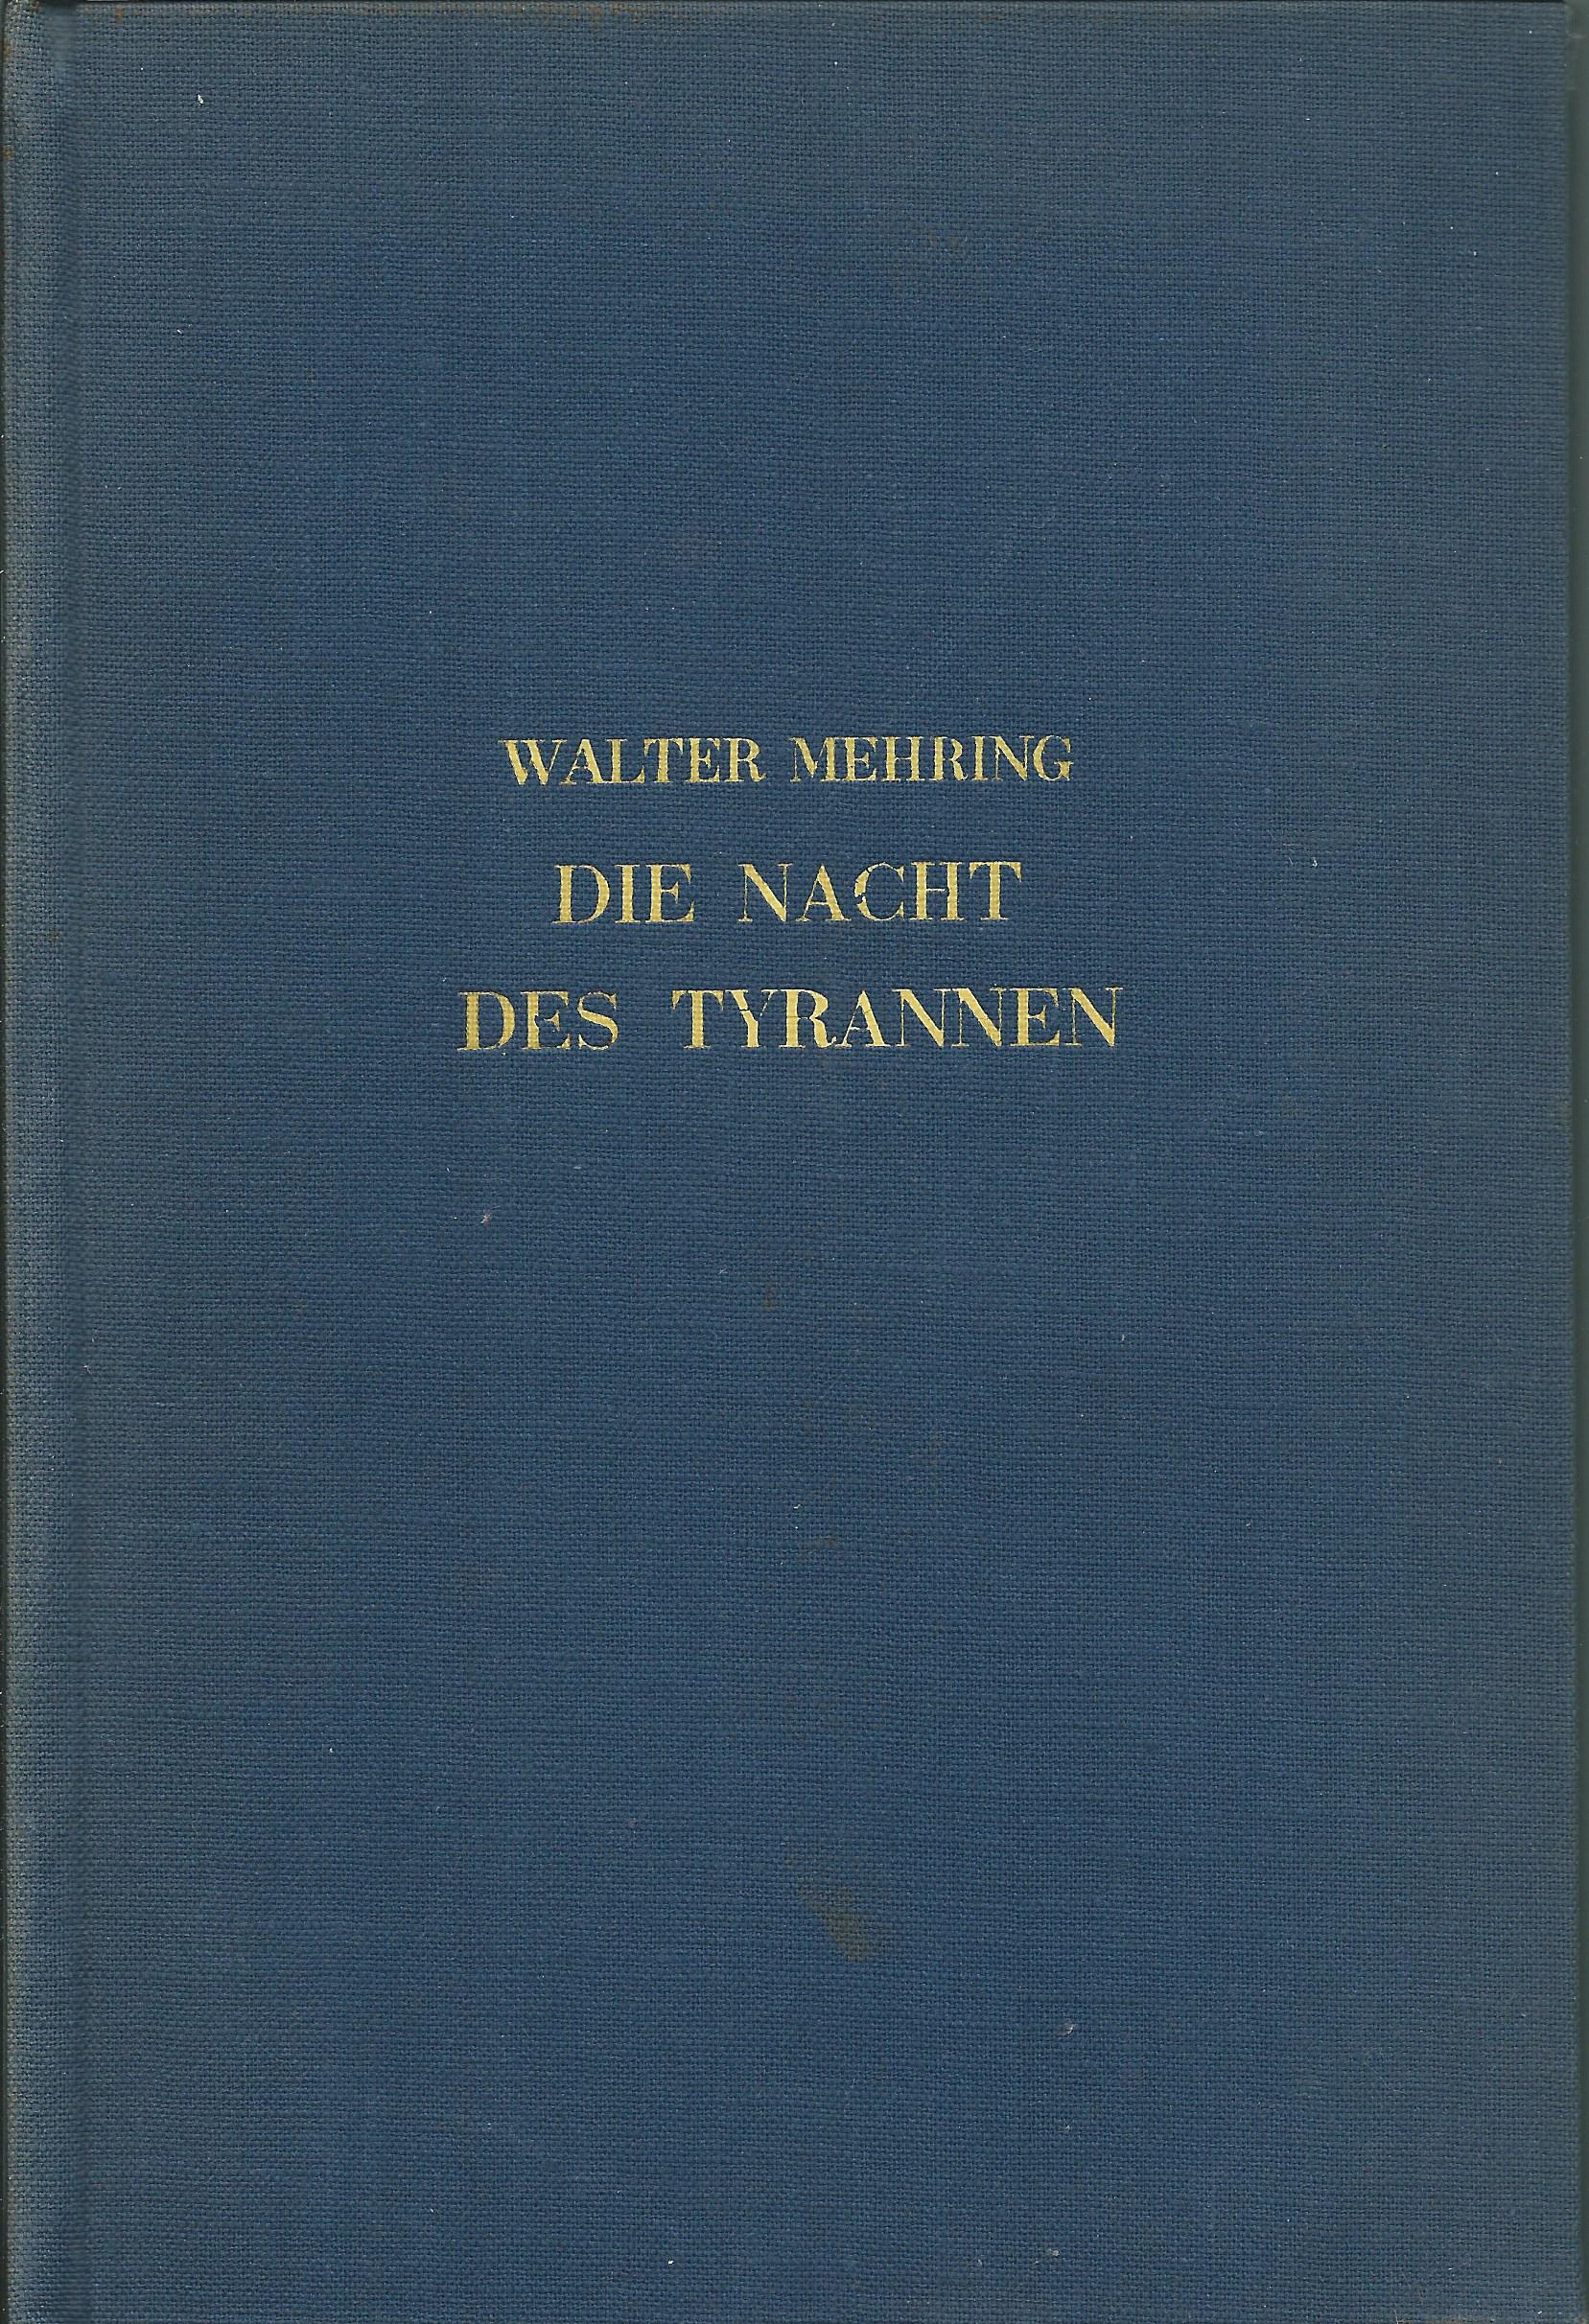 Die Nacht des Tyrannen (1937)